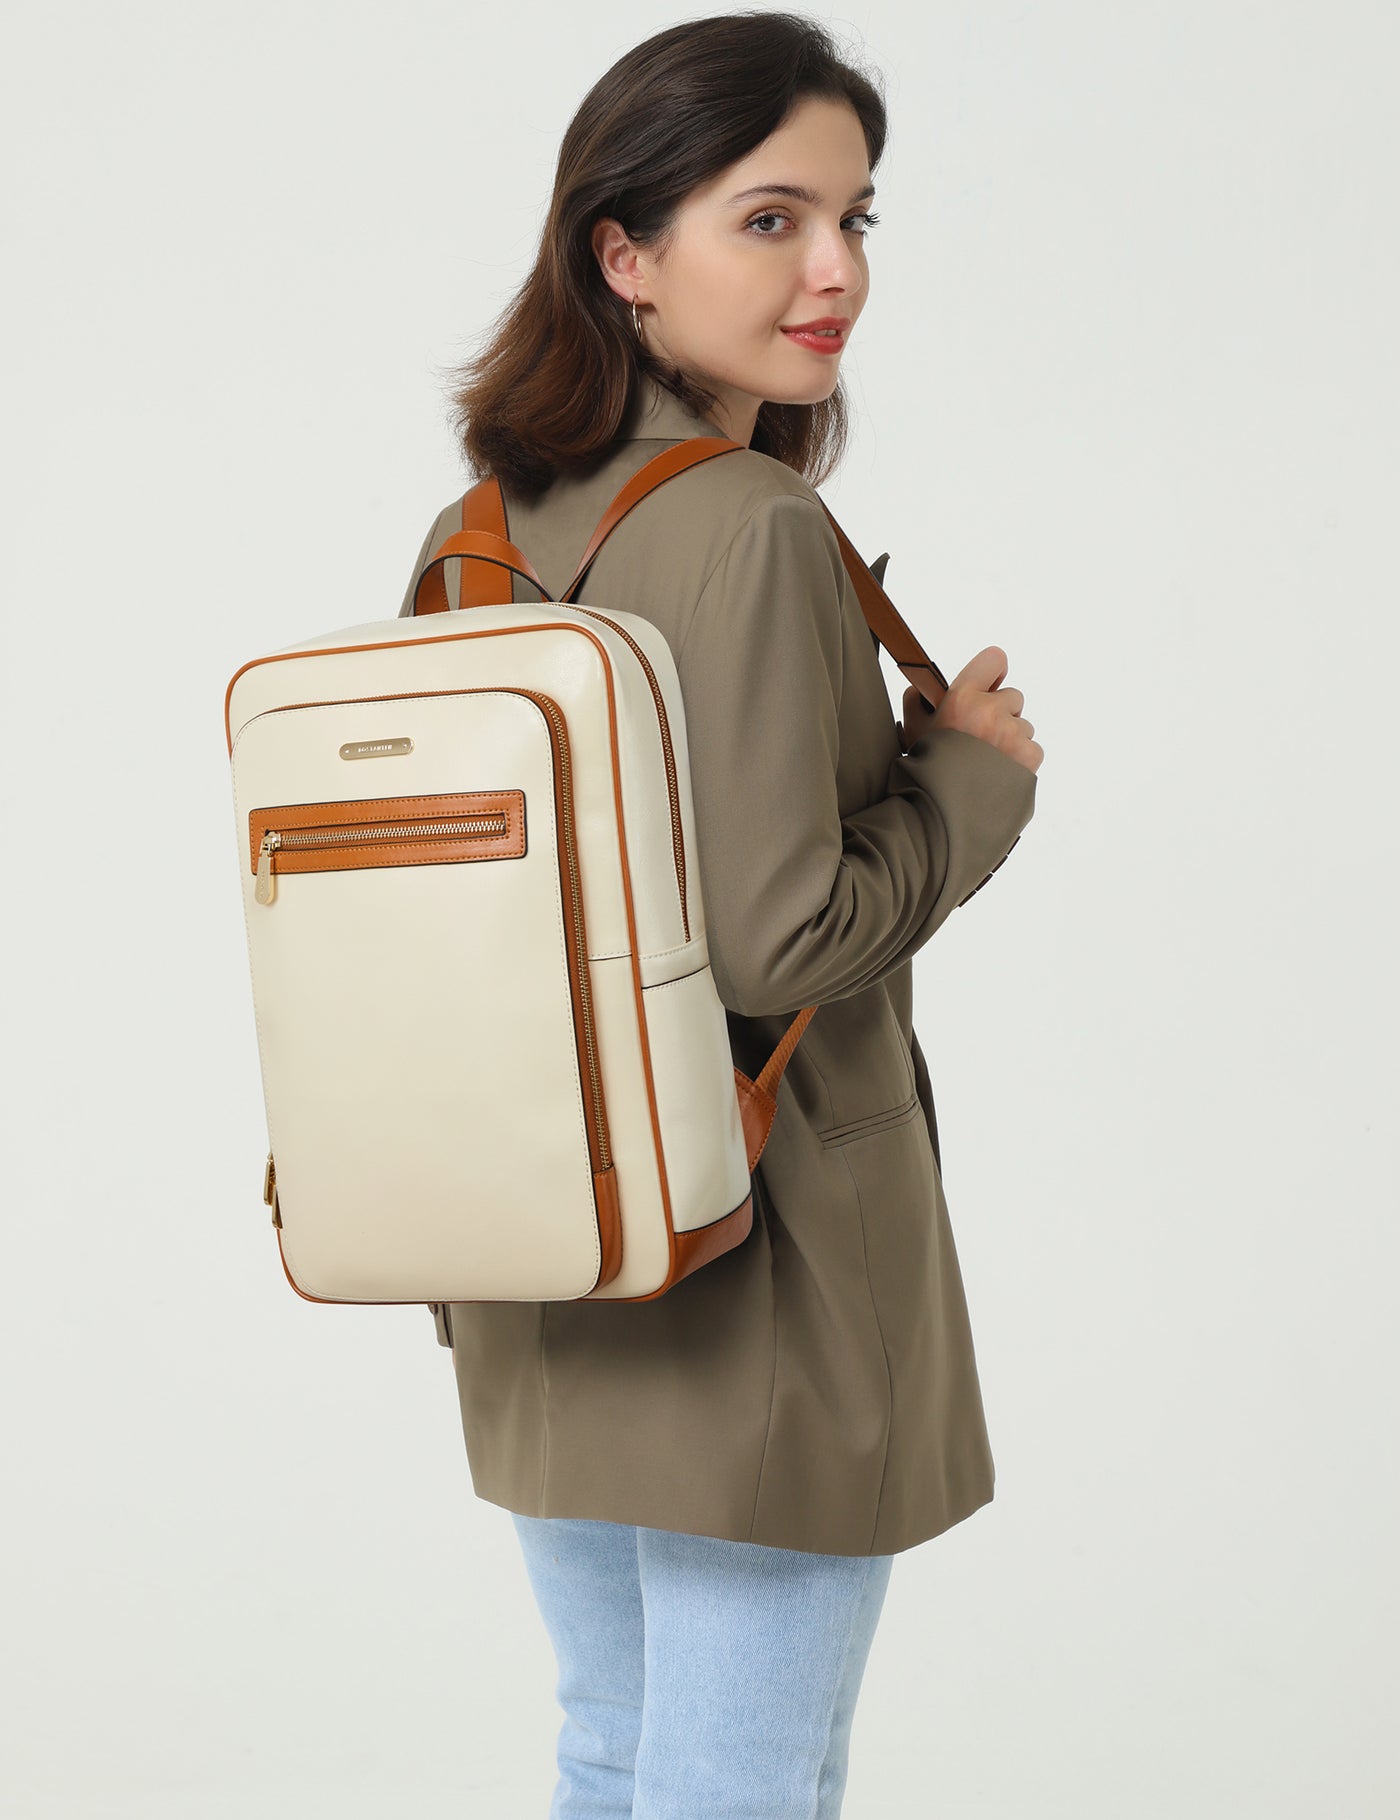 Vrba Laptop Travel Anti-theft Backpack for Women